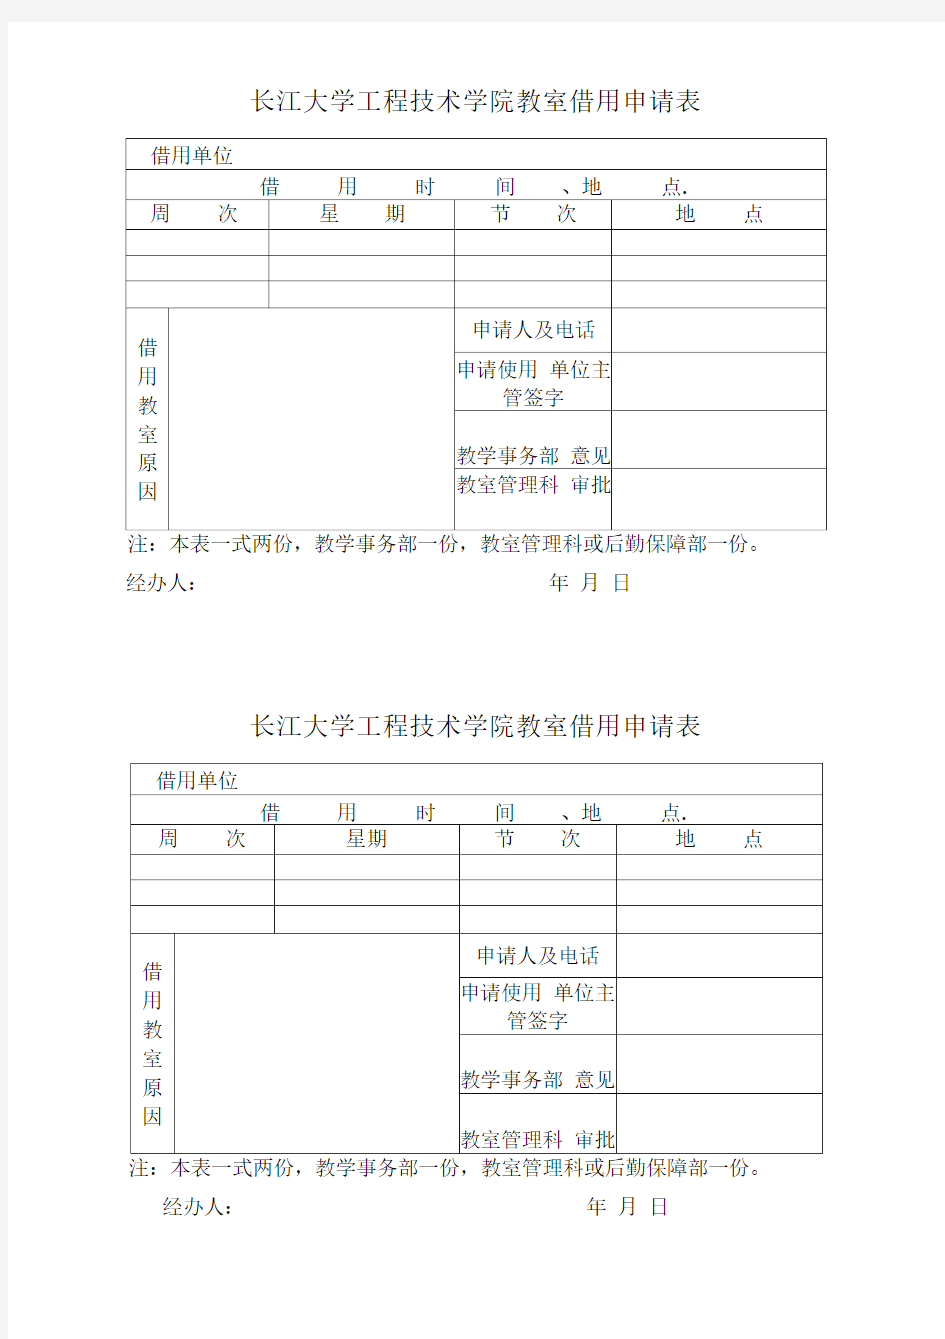 长江大学工程技术学院教室借用申请表